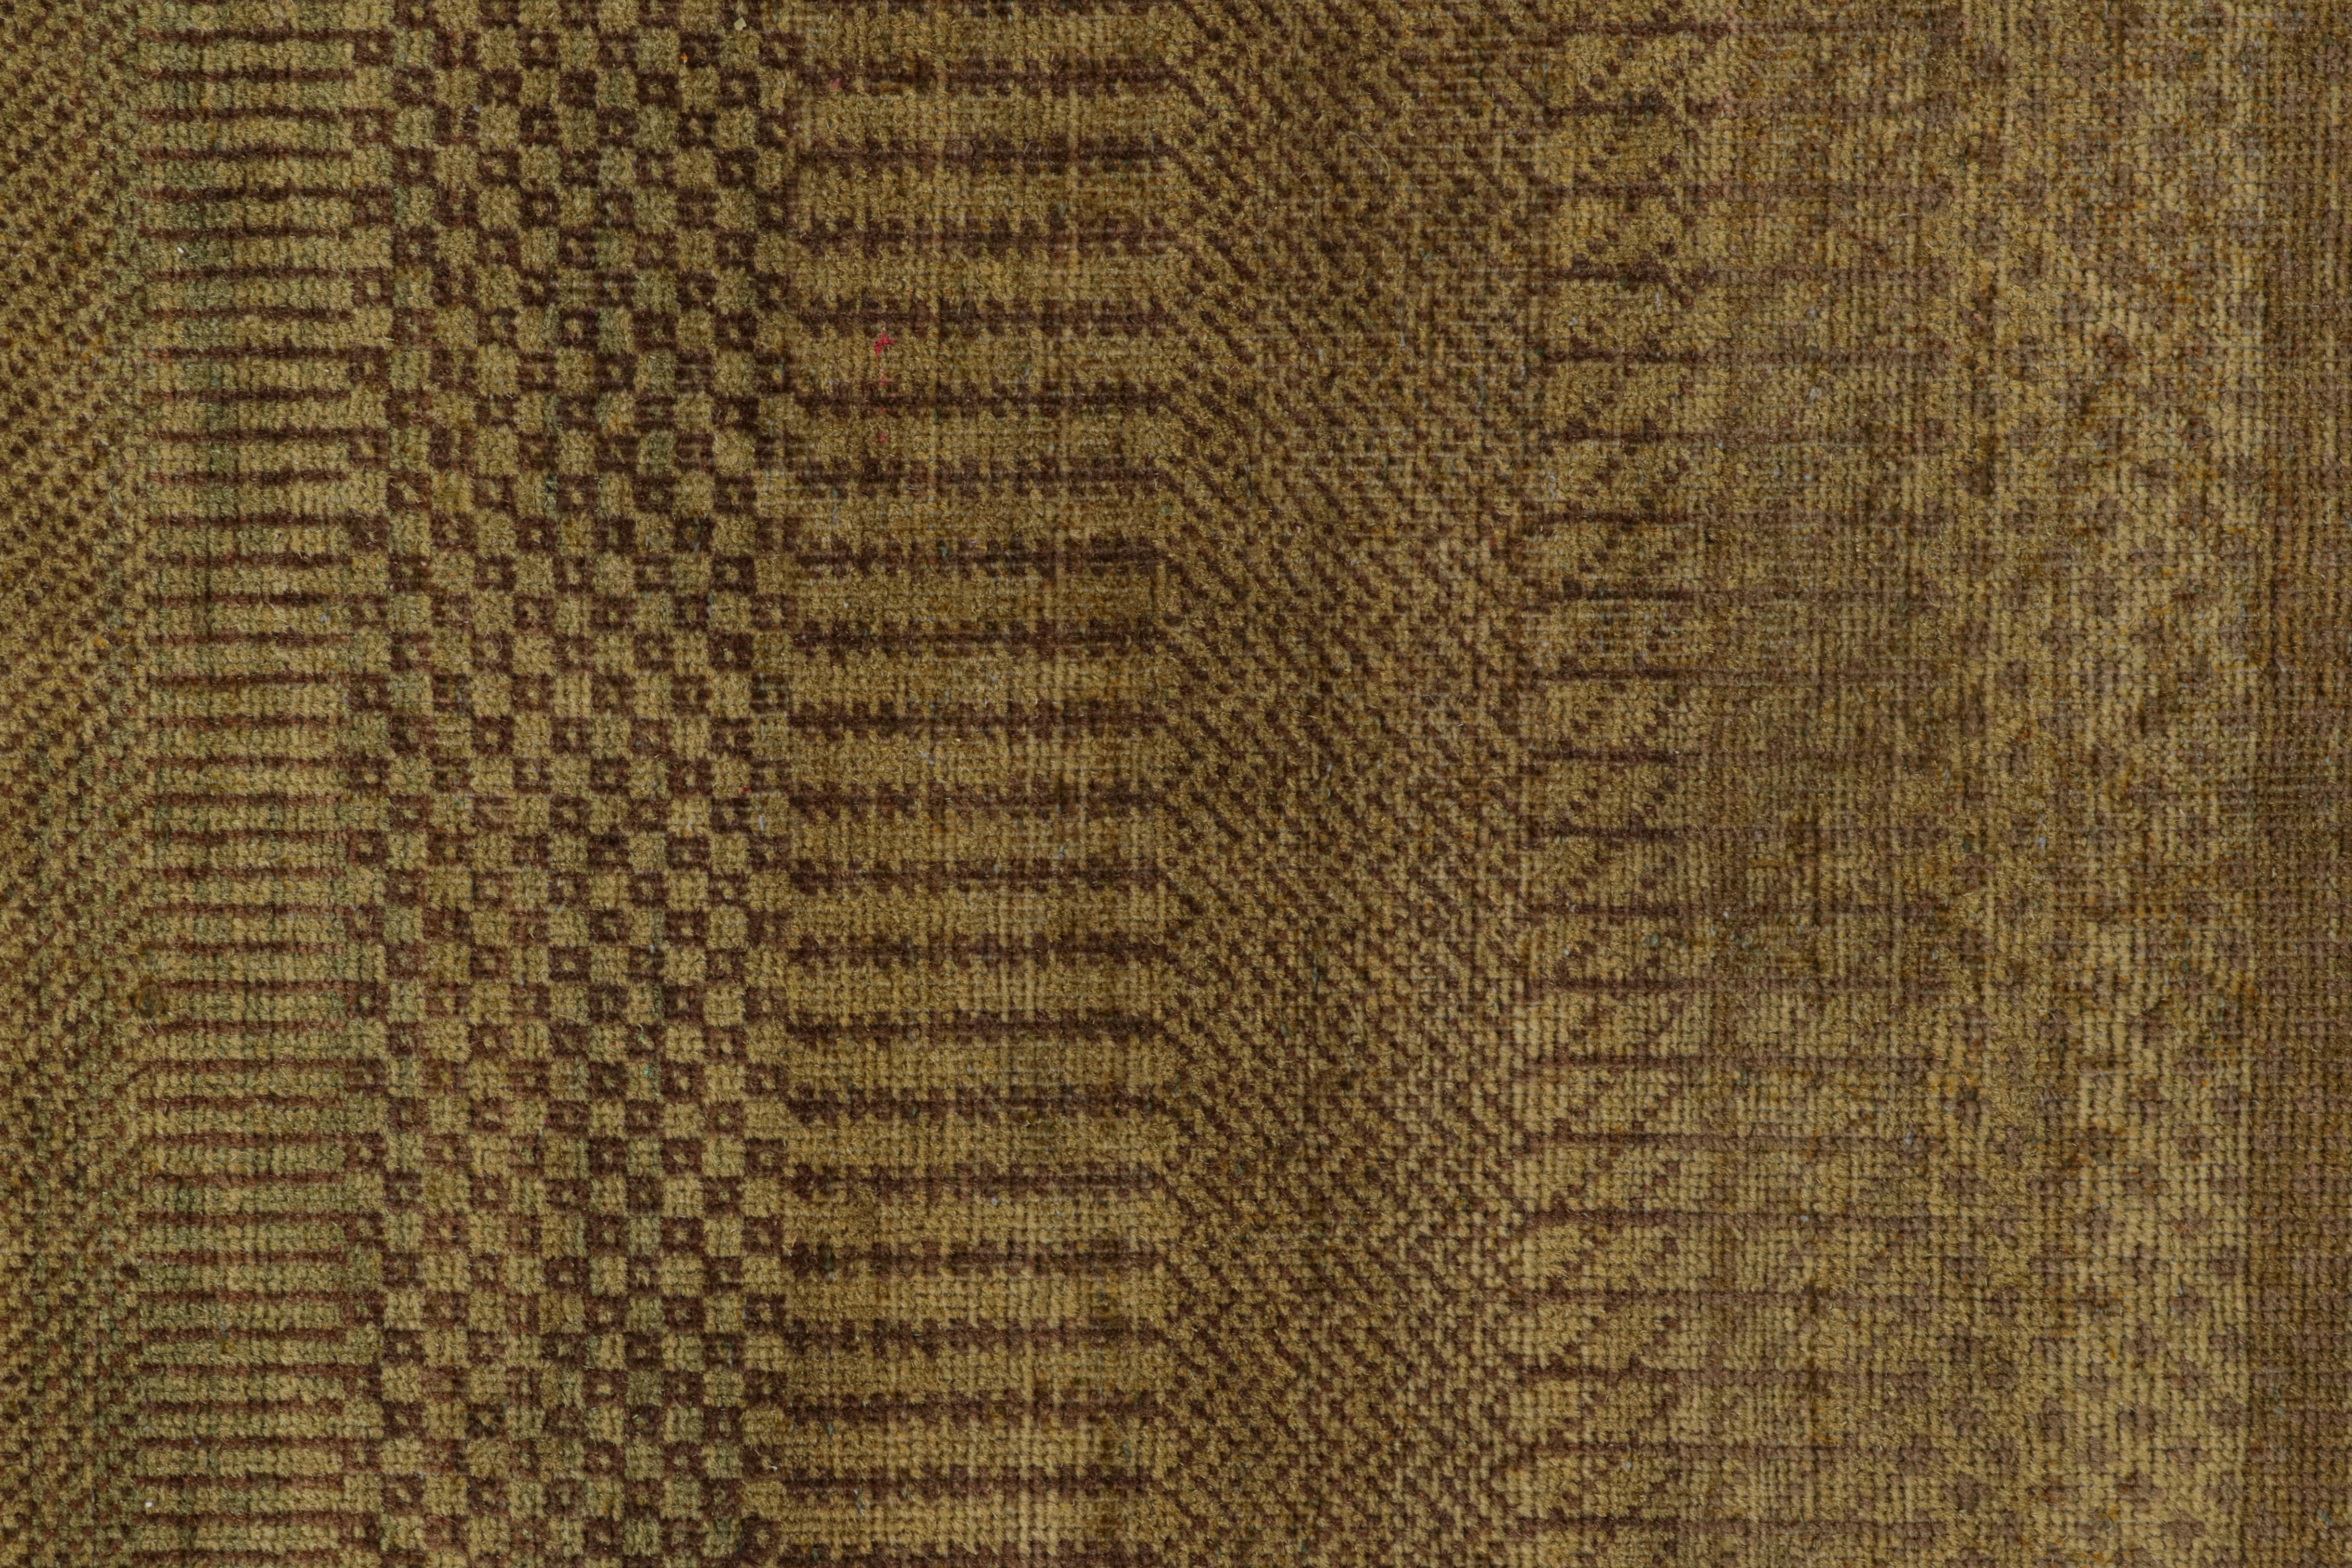 Rug & Kilim's Modern Textural Rug in Grün, Brown und Gold Striae und Striae